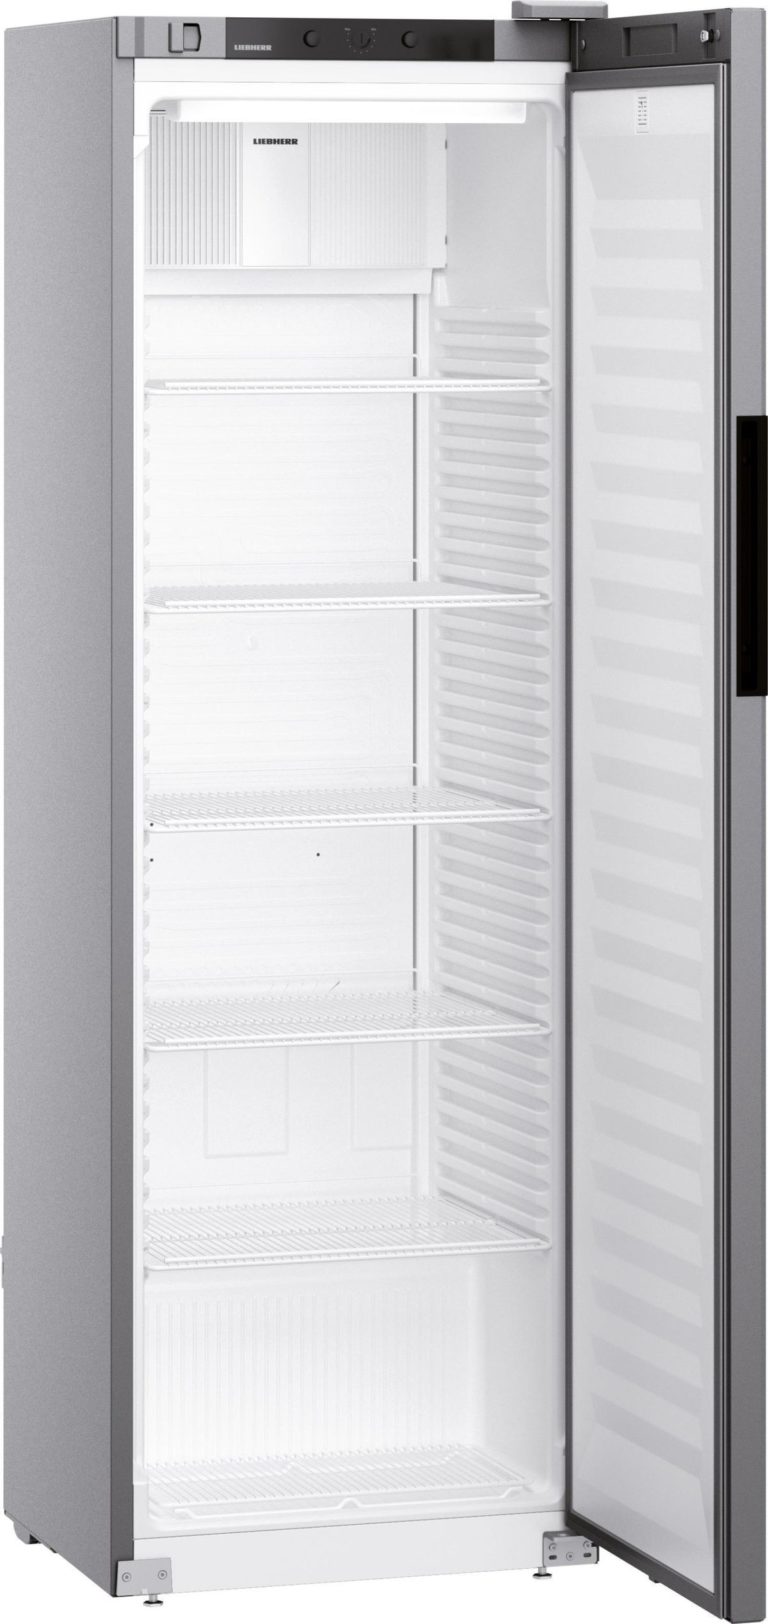 MRFVD-4001-20 LIEBHERR Kühlschrank mit Umluftbetrieb